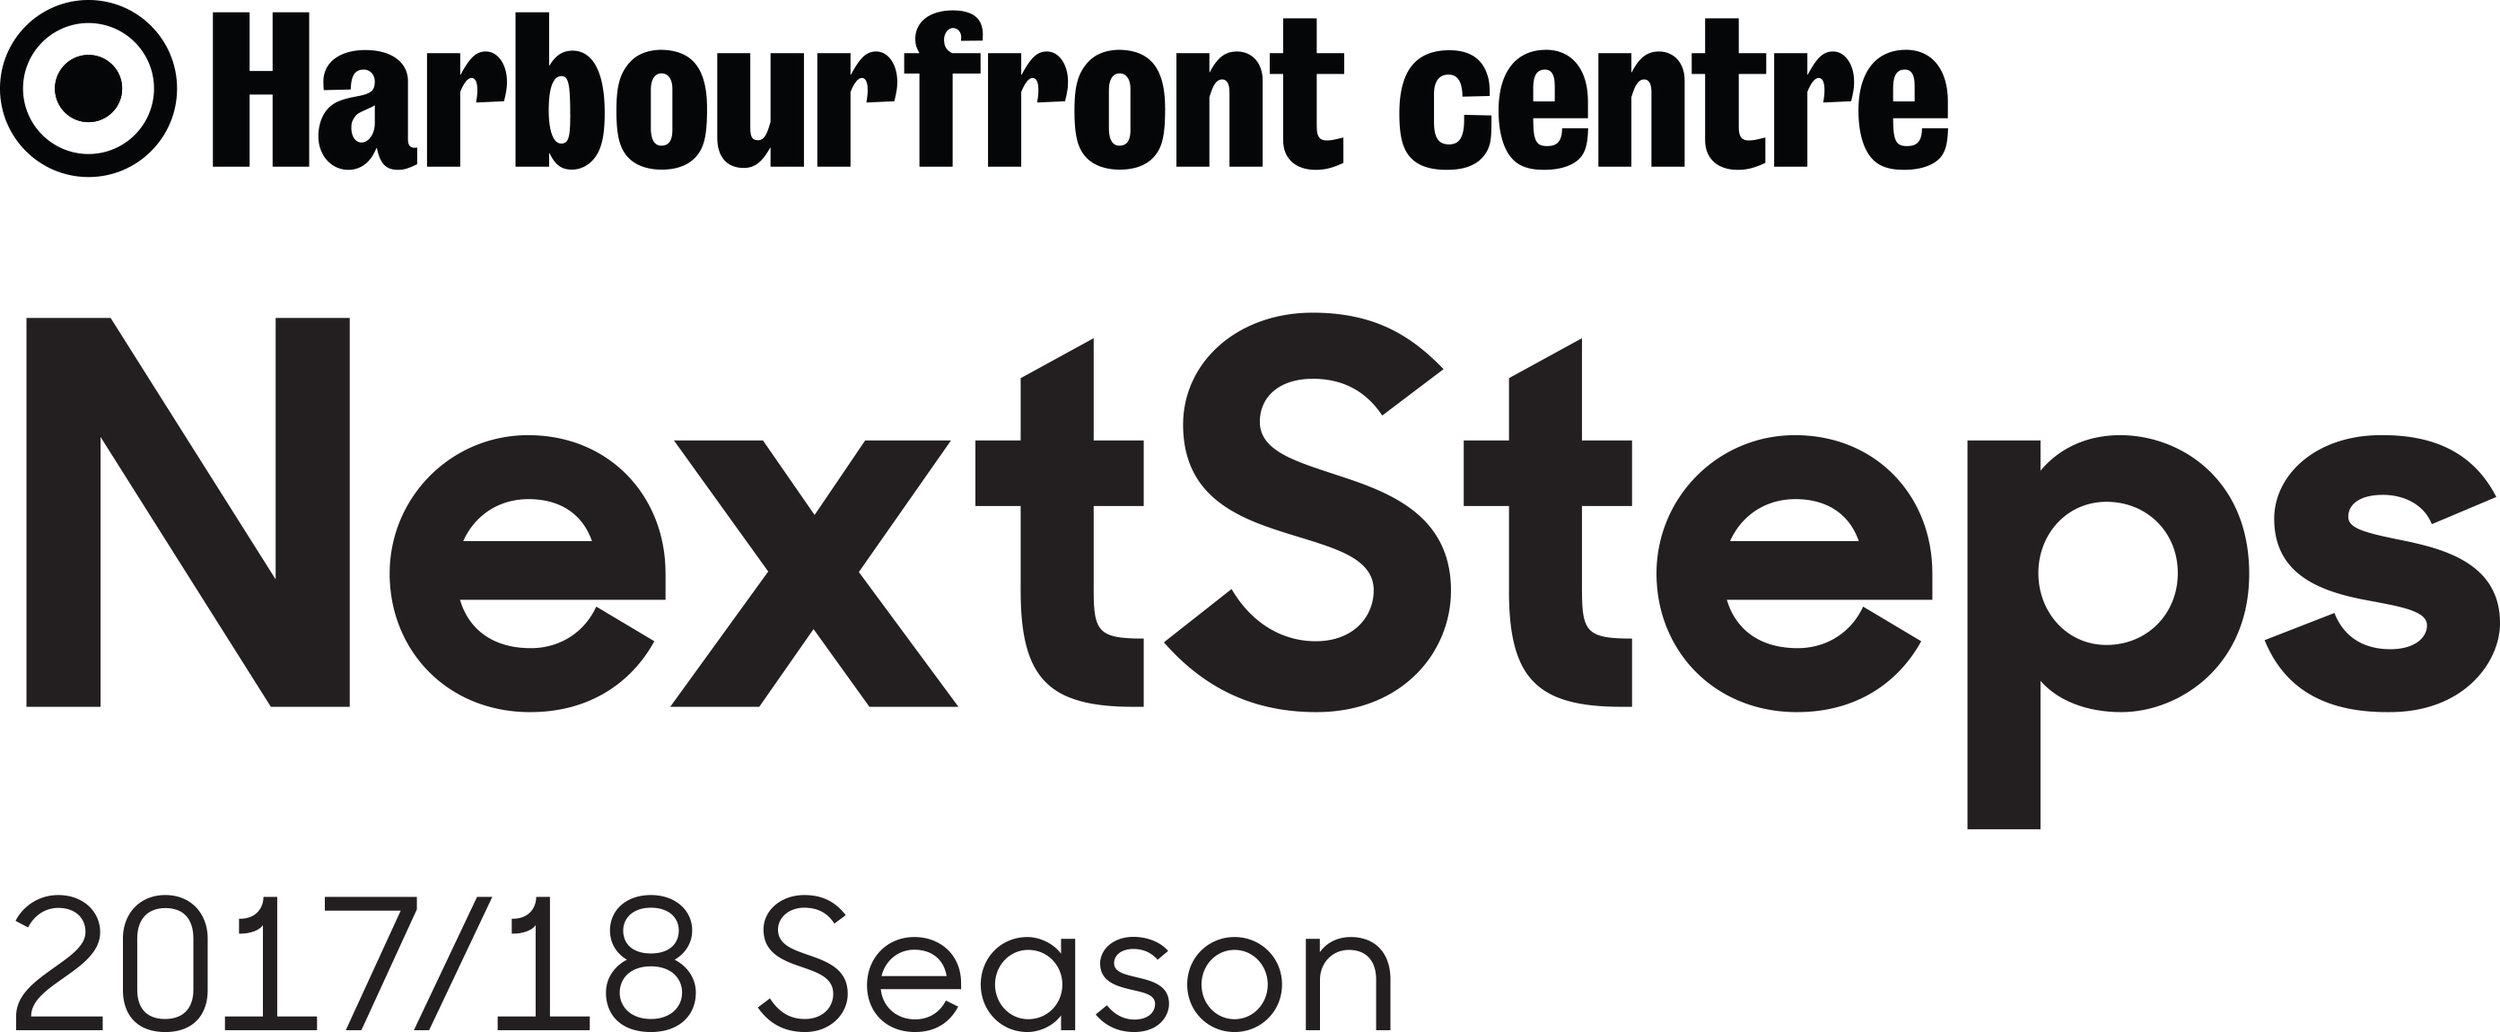 Harbourfront Centre NextSteps Logo black on white.jpg